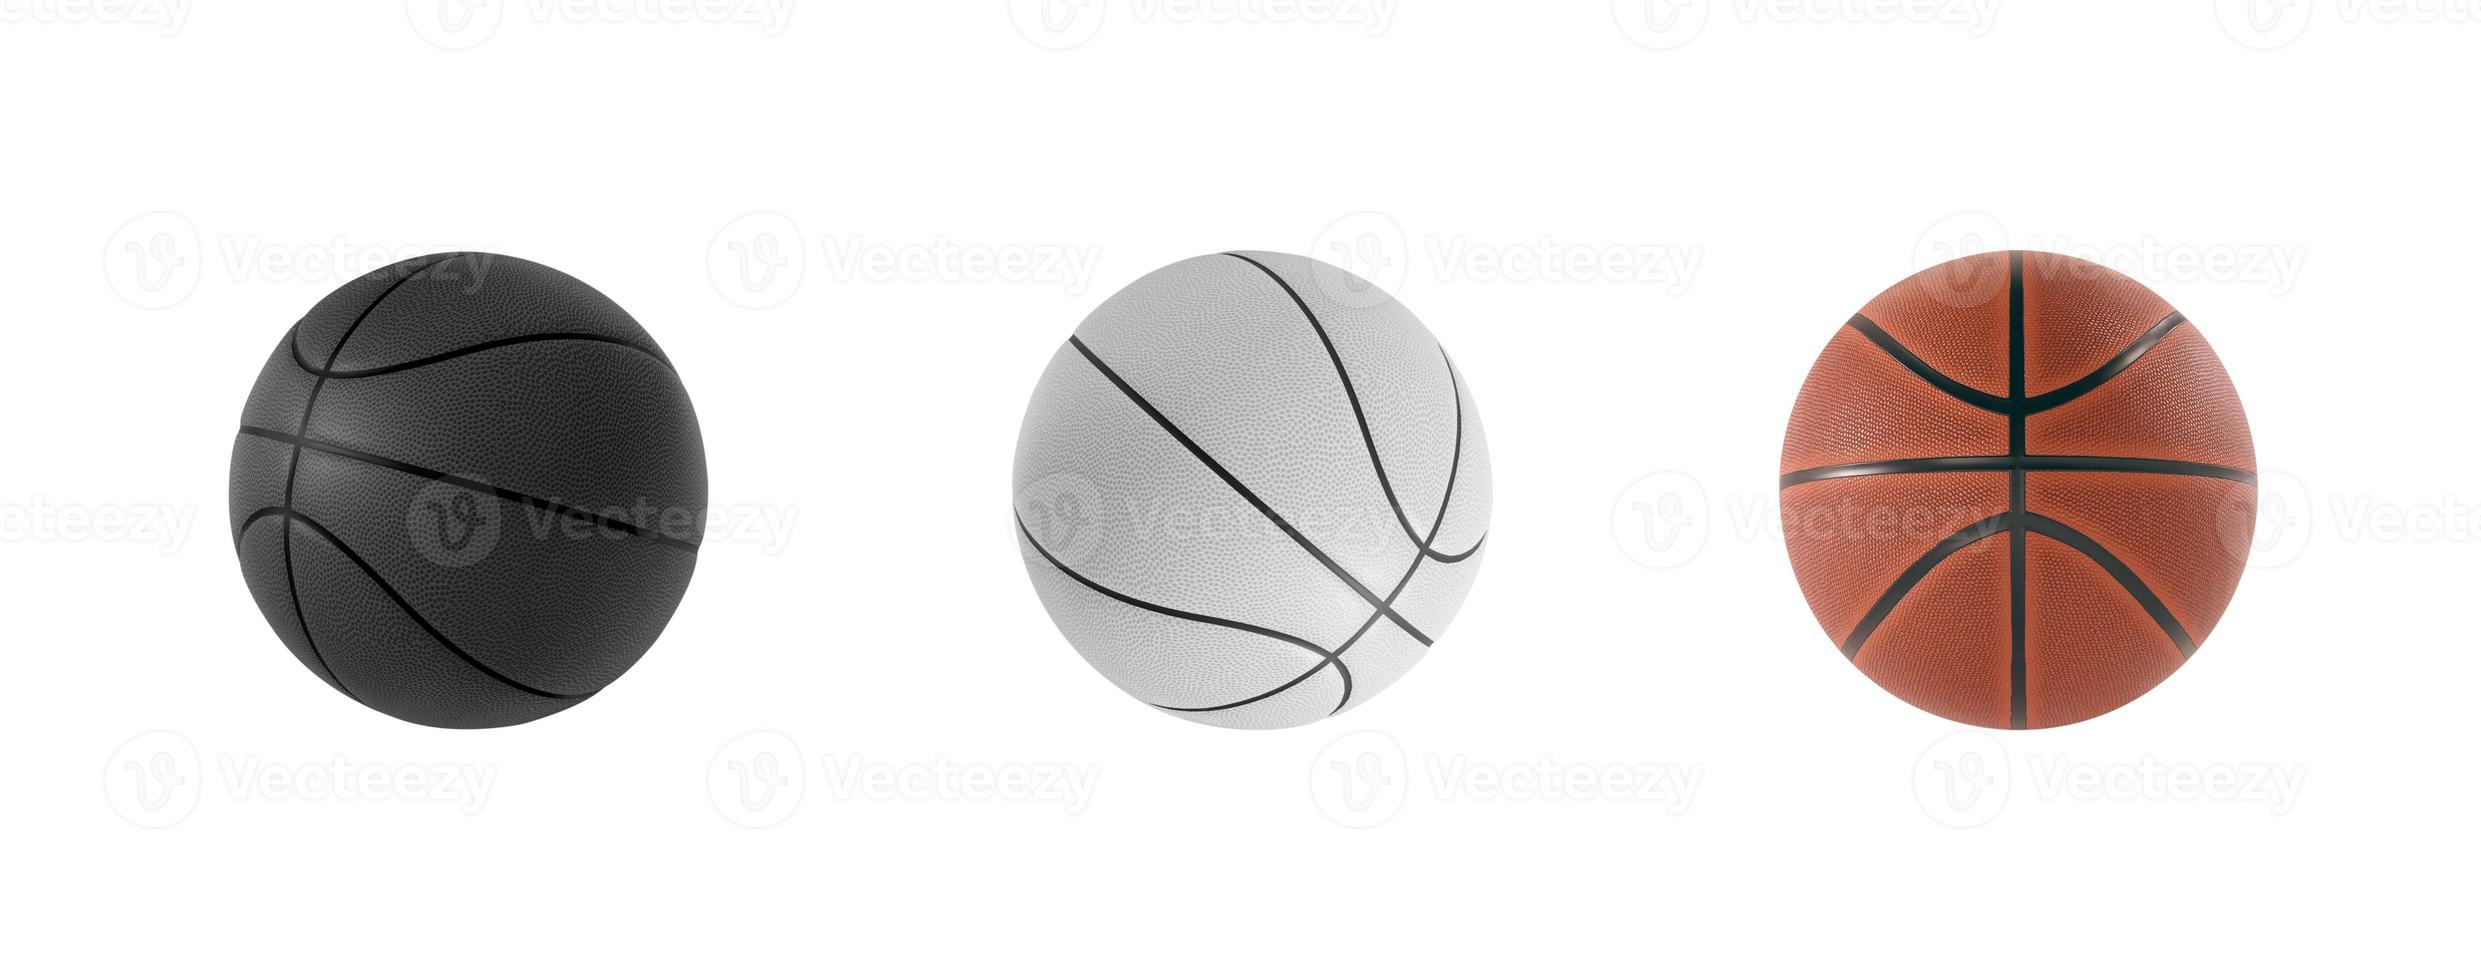 bola de basquete isolada no fundo branco. renderização em 3D foto